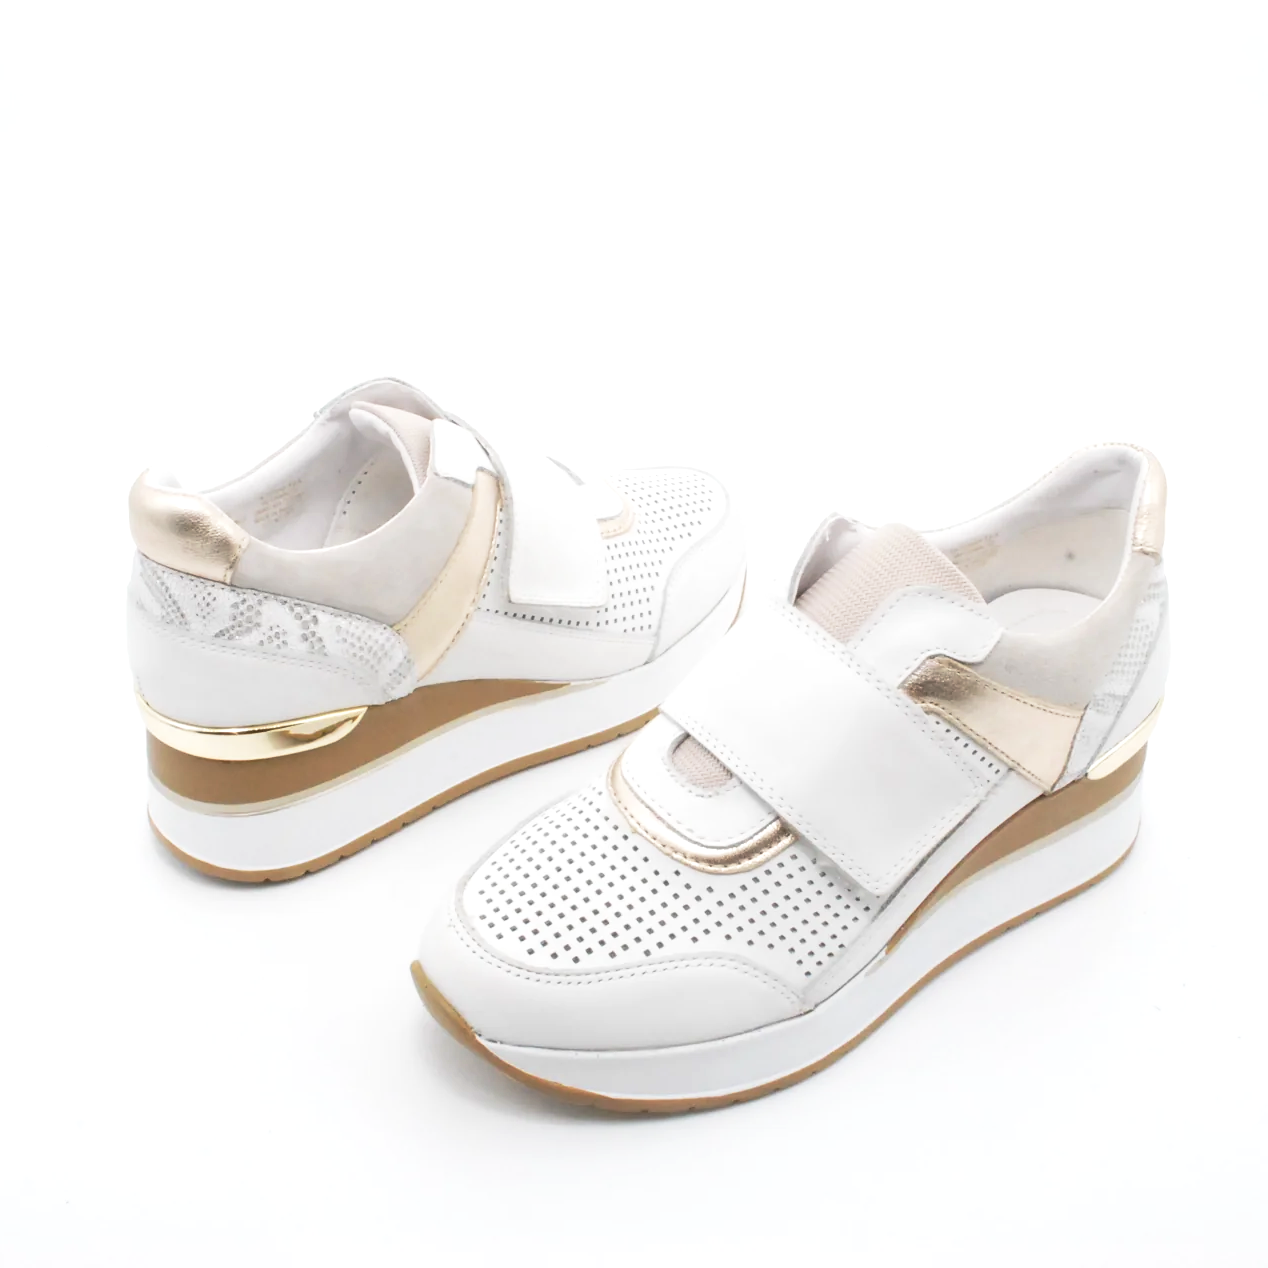 sneakers-riposella-in-pelle-comfort-2.png